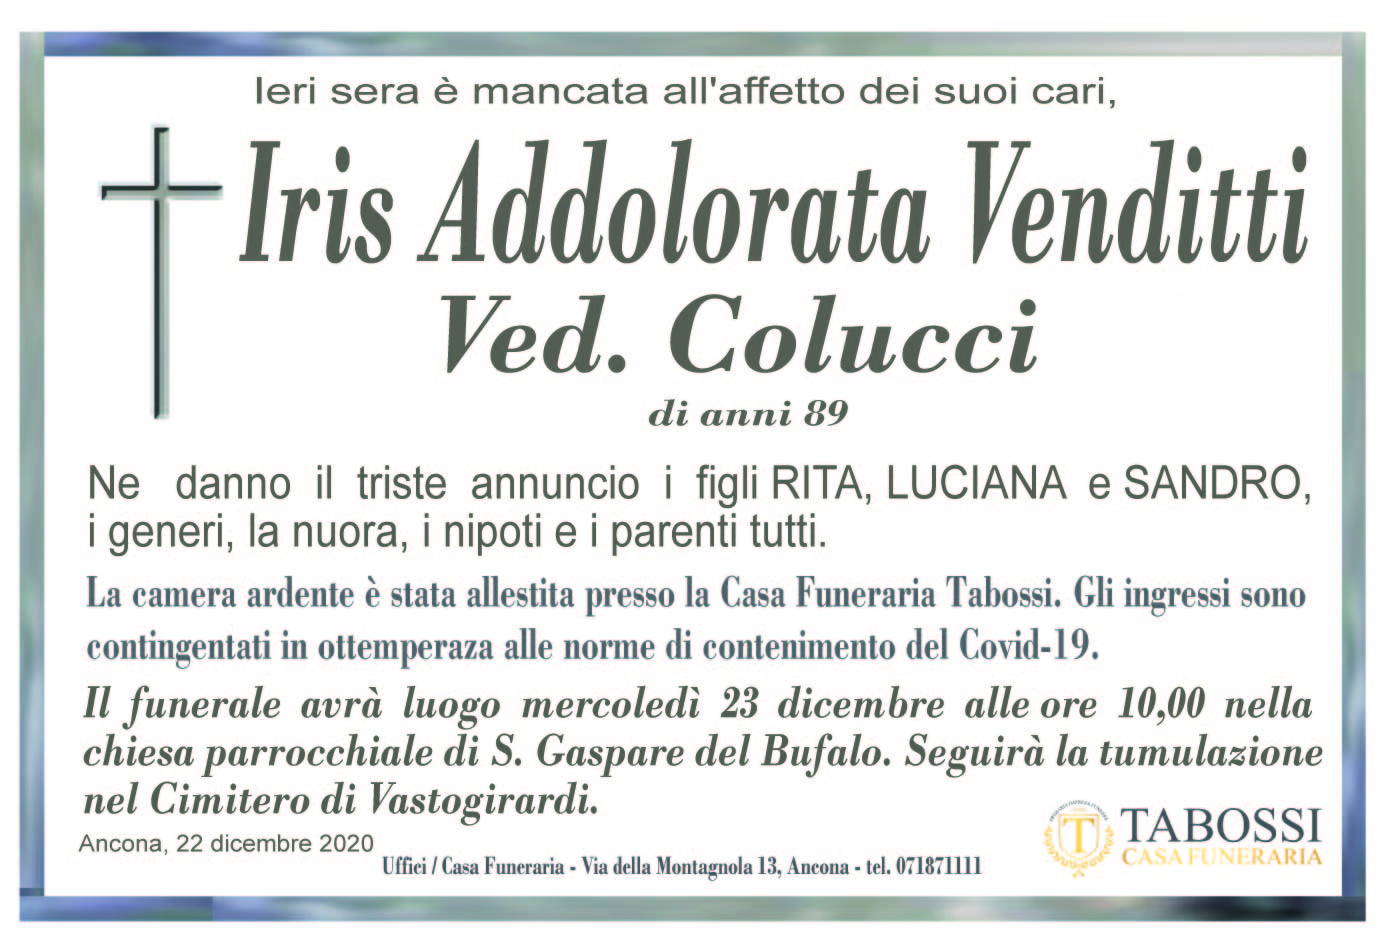 Iris Addolorata Venditti